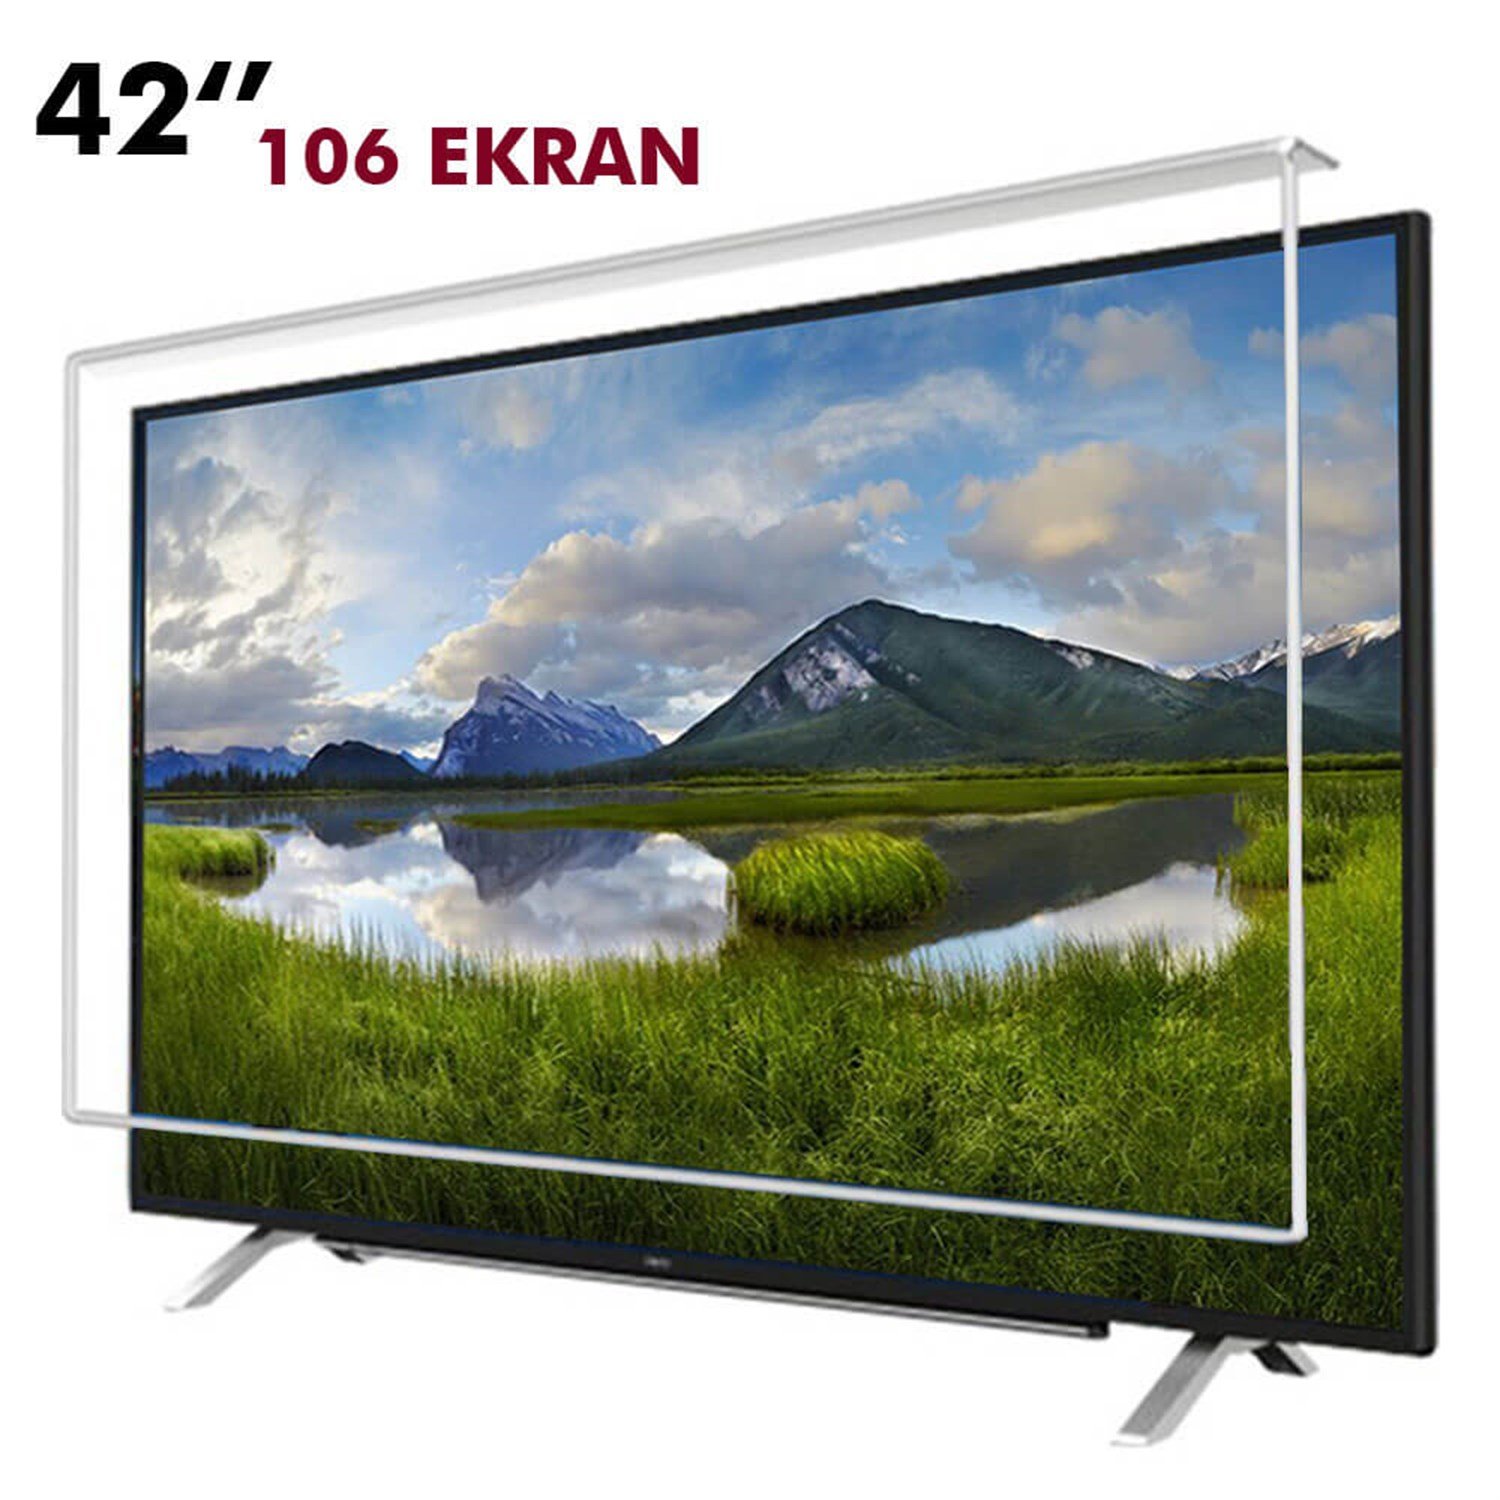 Tv Ekran Koruyucu 106 Ekran(42” inch) | Okularenkkat.com